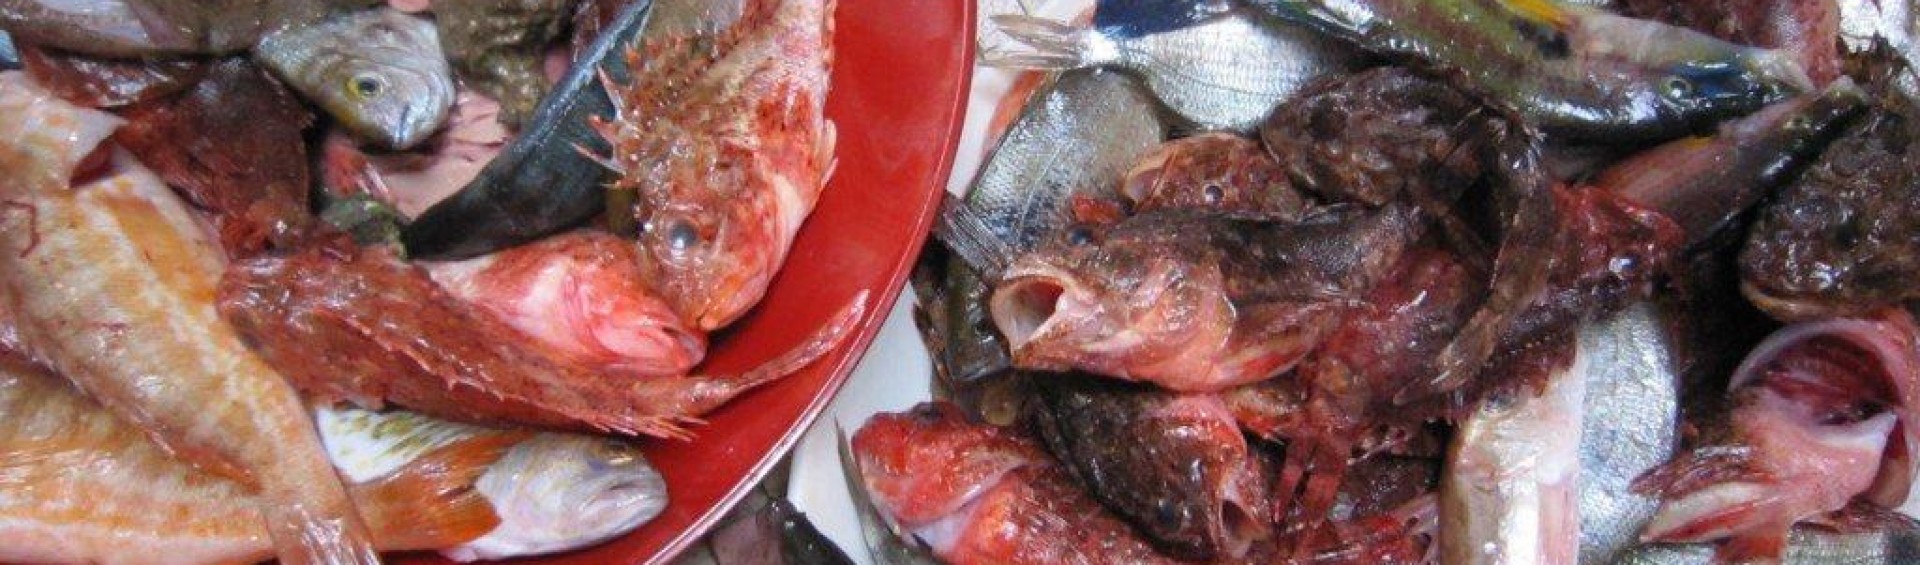 les poissons de bouillabaisse